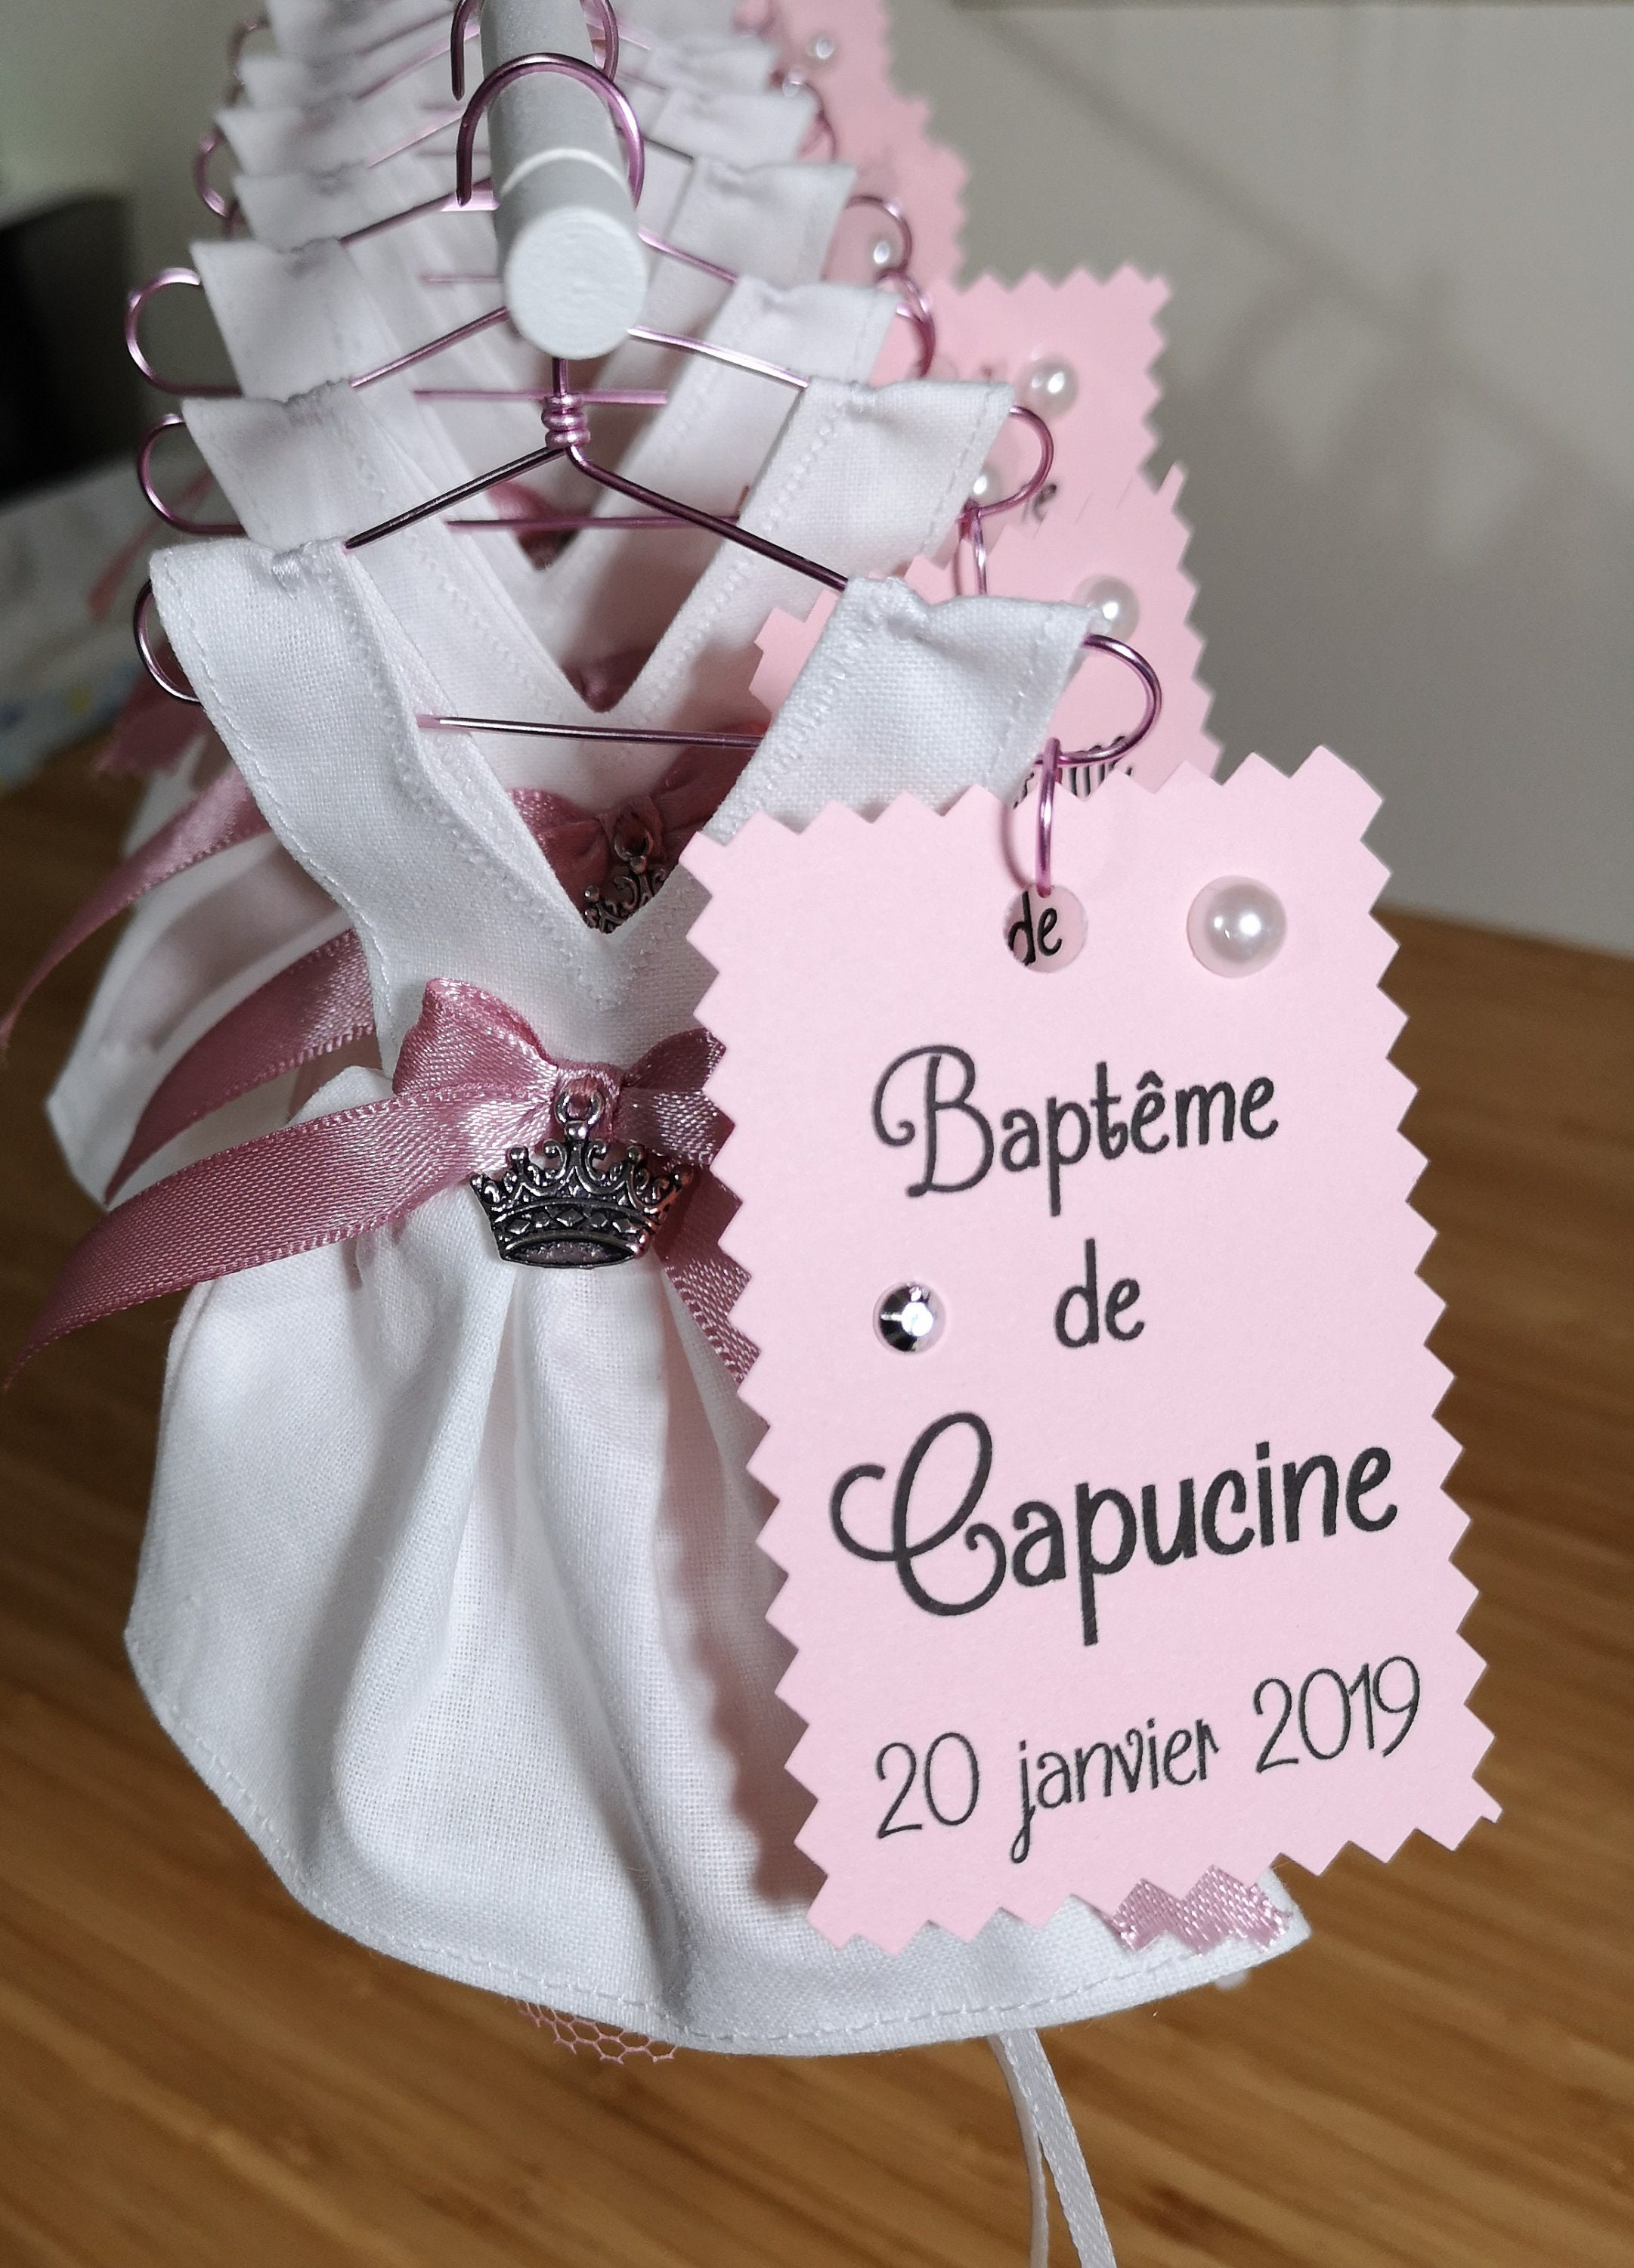 Contenant à dragées / bonbonnière baptême fille forme robe en tissu :  Blanc, rose, et argent thème princesse, couronne SUR COMMANDE -  Canada